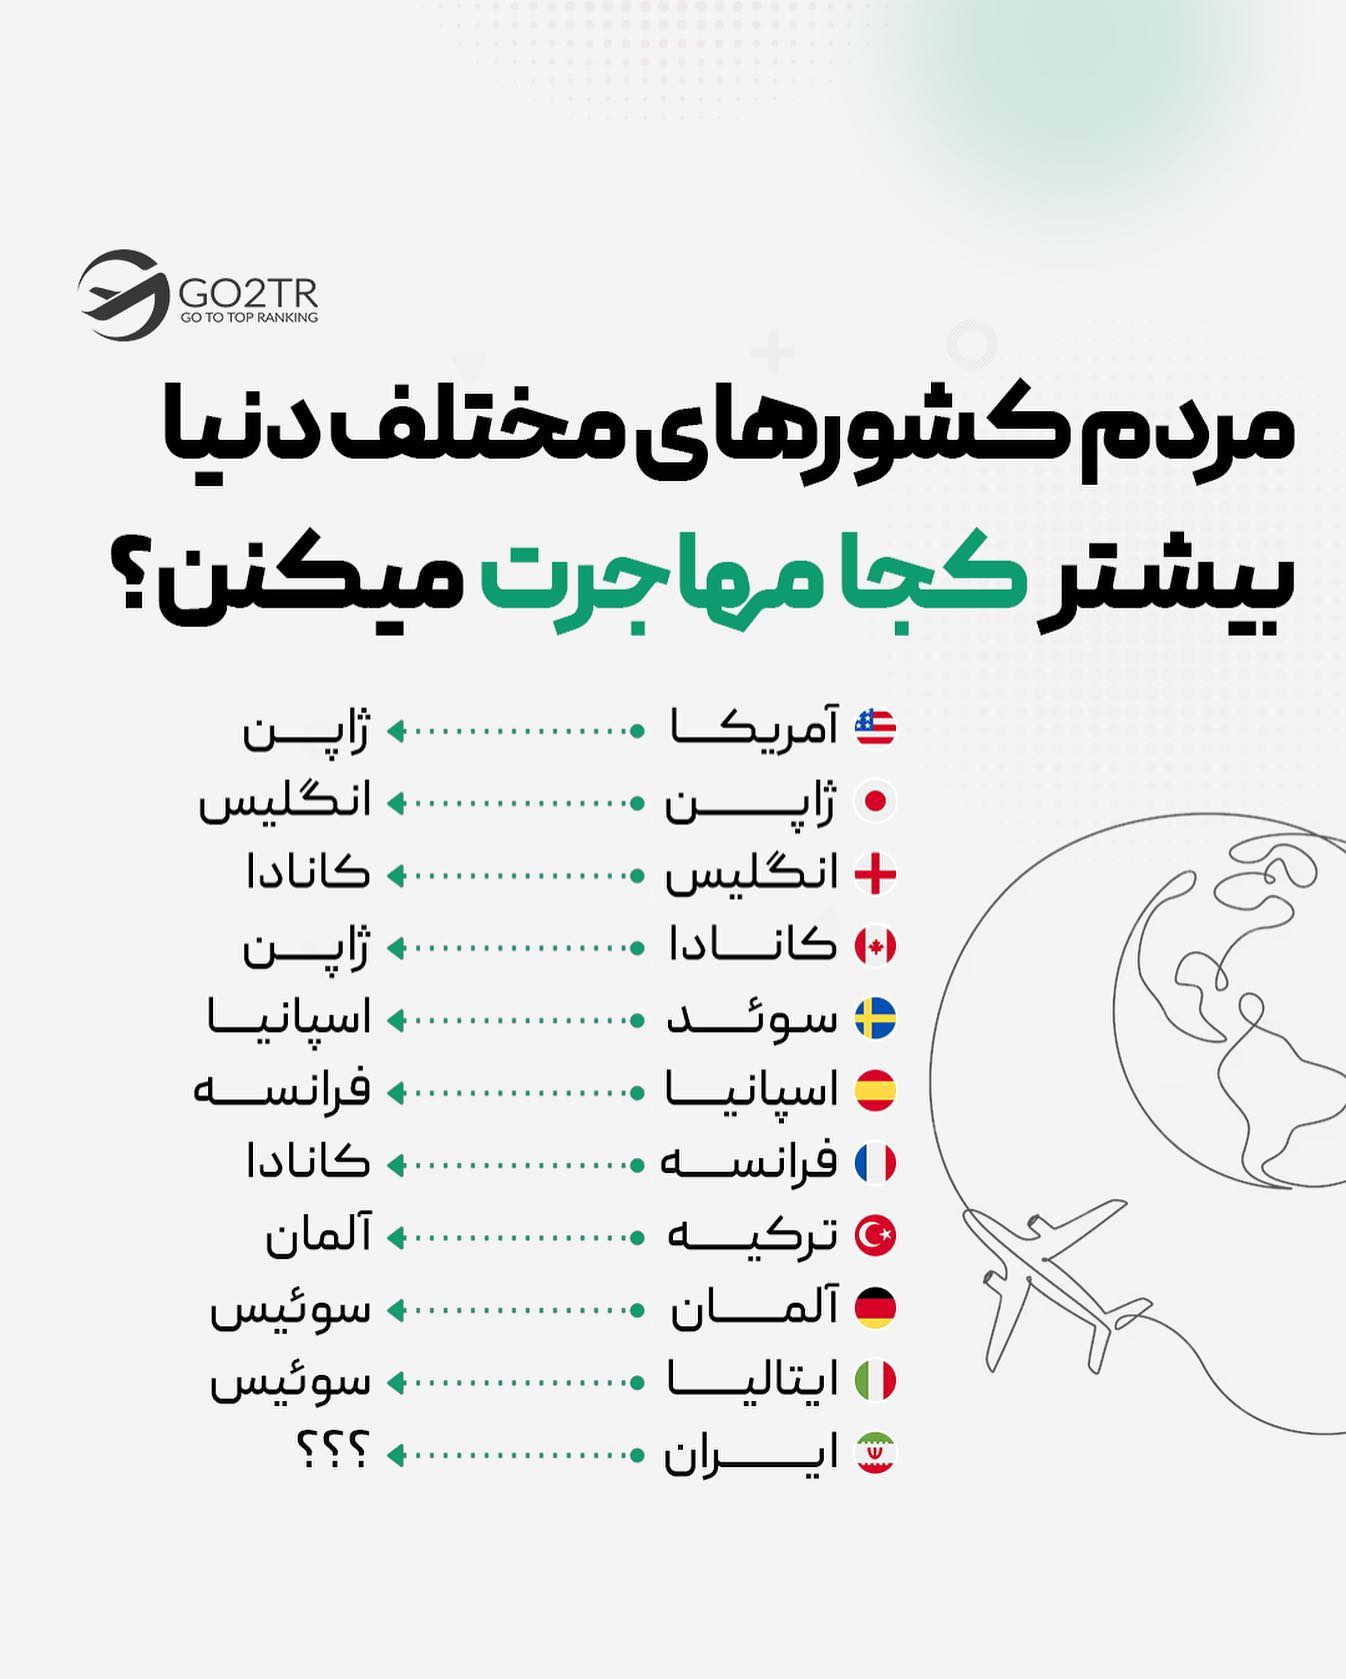 آرزوی ما، خاطره دیگریه…🙂بنظرت مردم ایران بیشتر کجا مهاجرت میکنن؟! . . #مهاجر